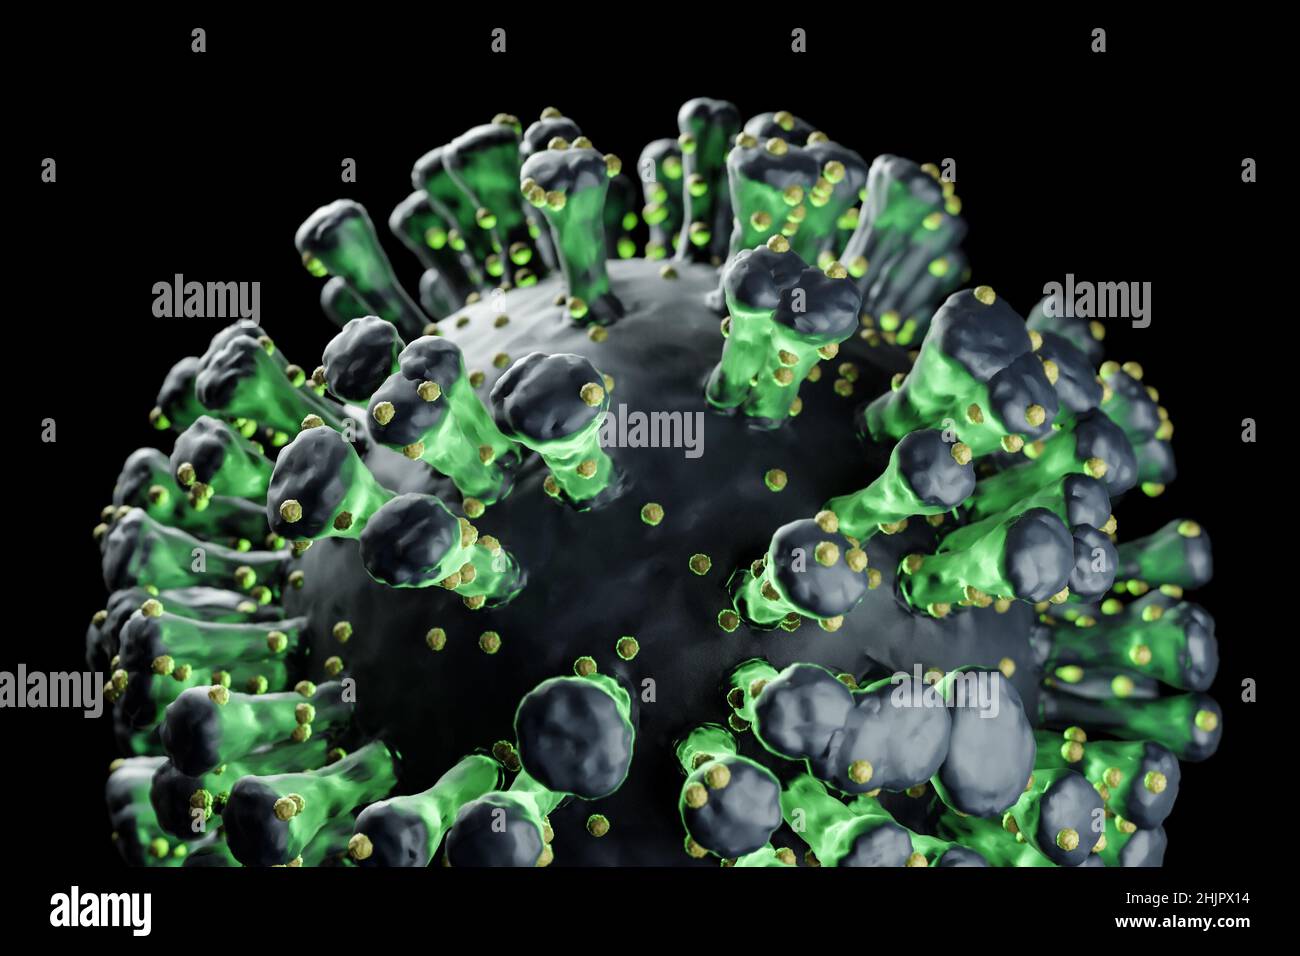 Illustrazione di una singola cellula virale, visualizzazione di un'infezione Foto Stock